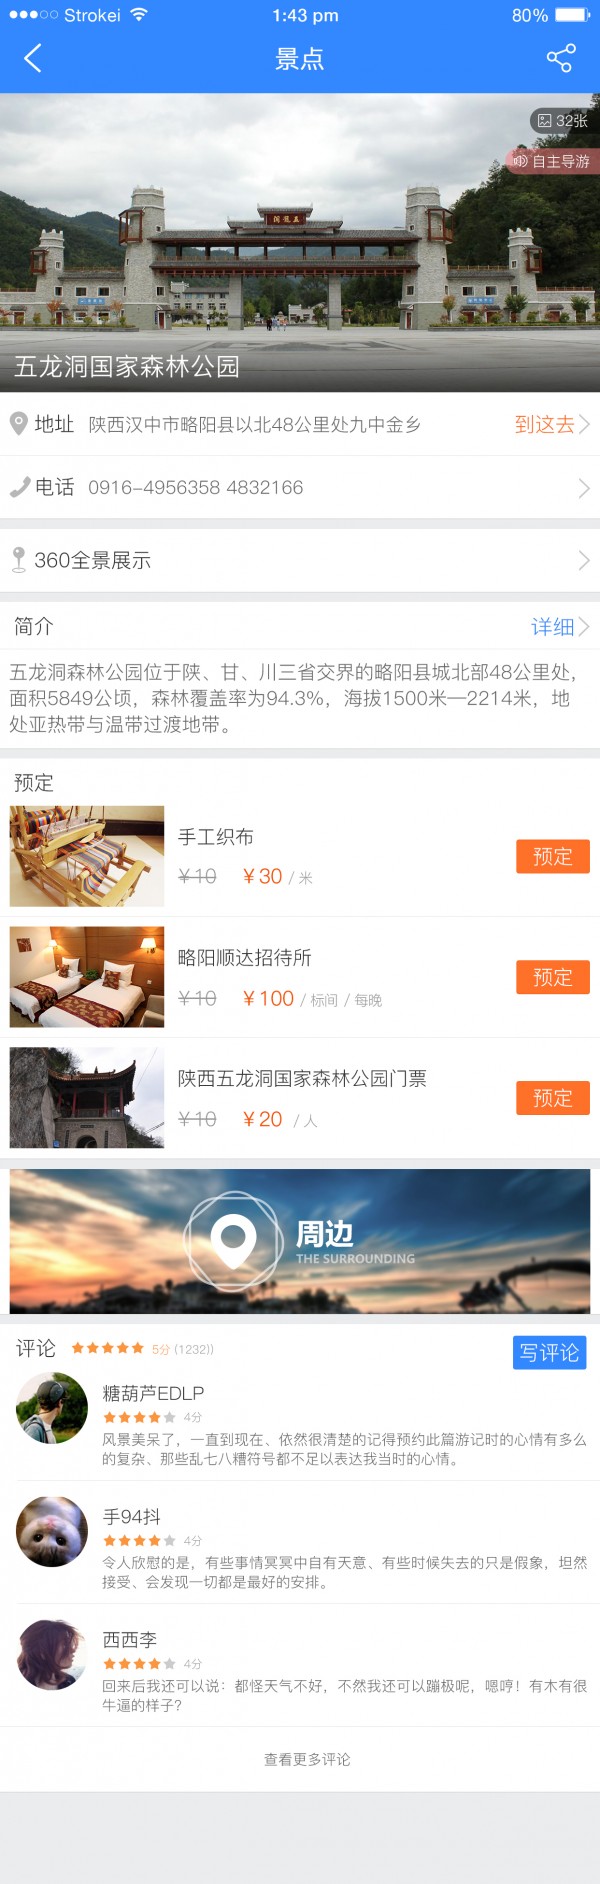 陇县旅游v1.2.5截图3